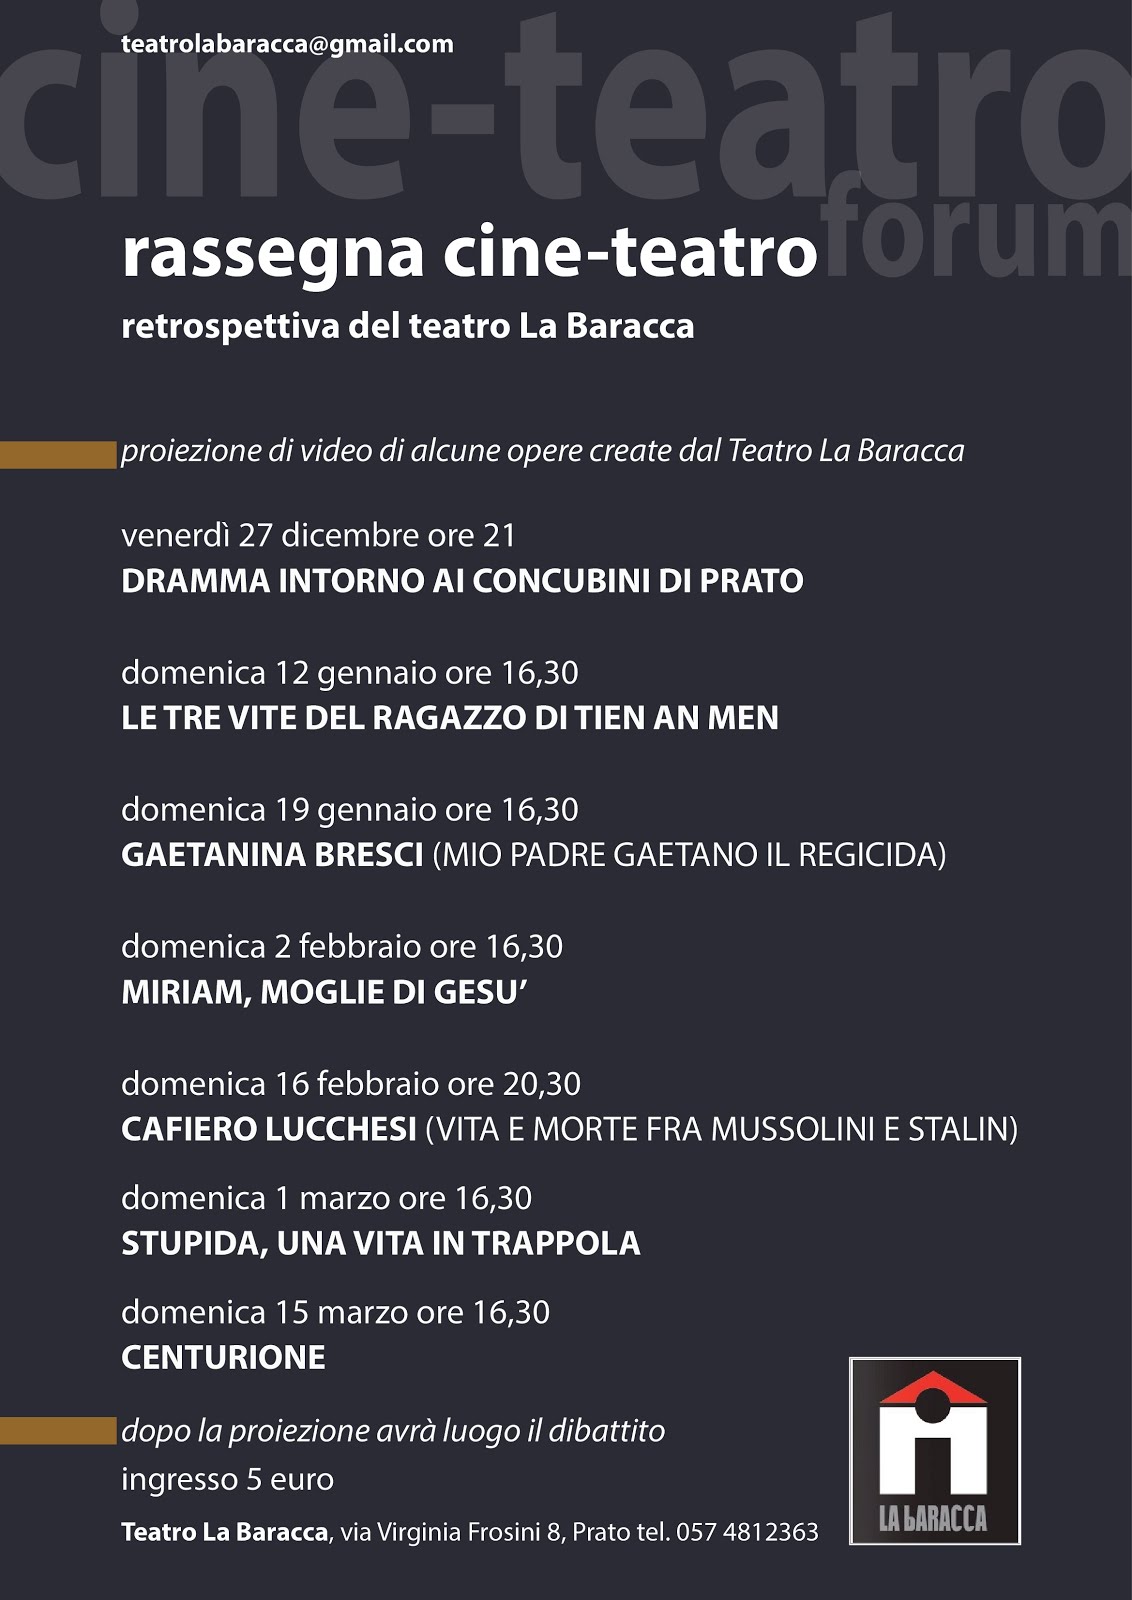 Restrospettiva Teatro La Baracca